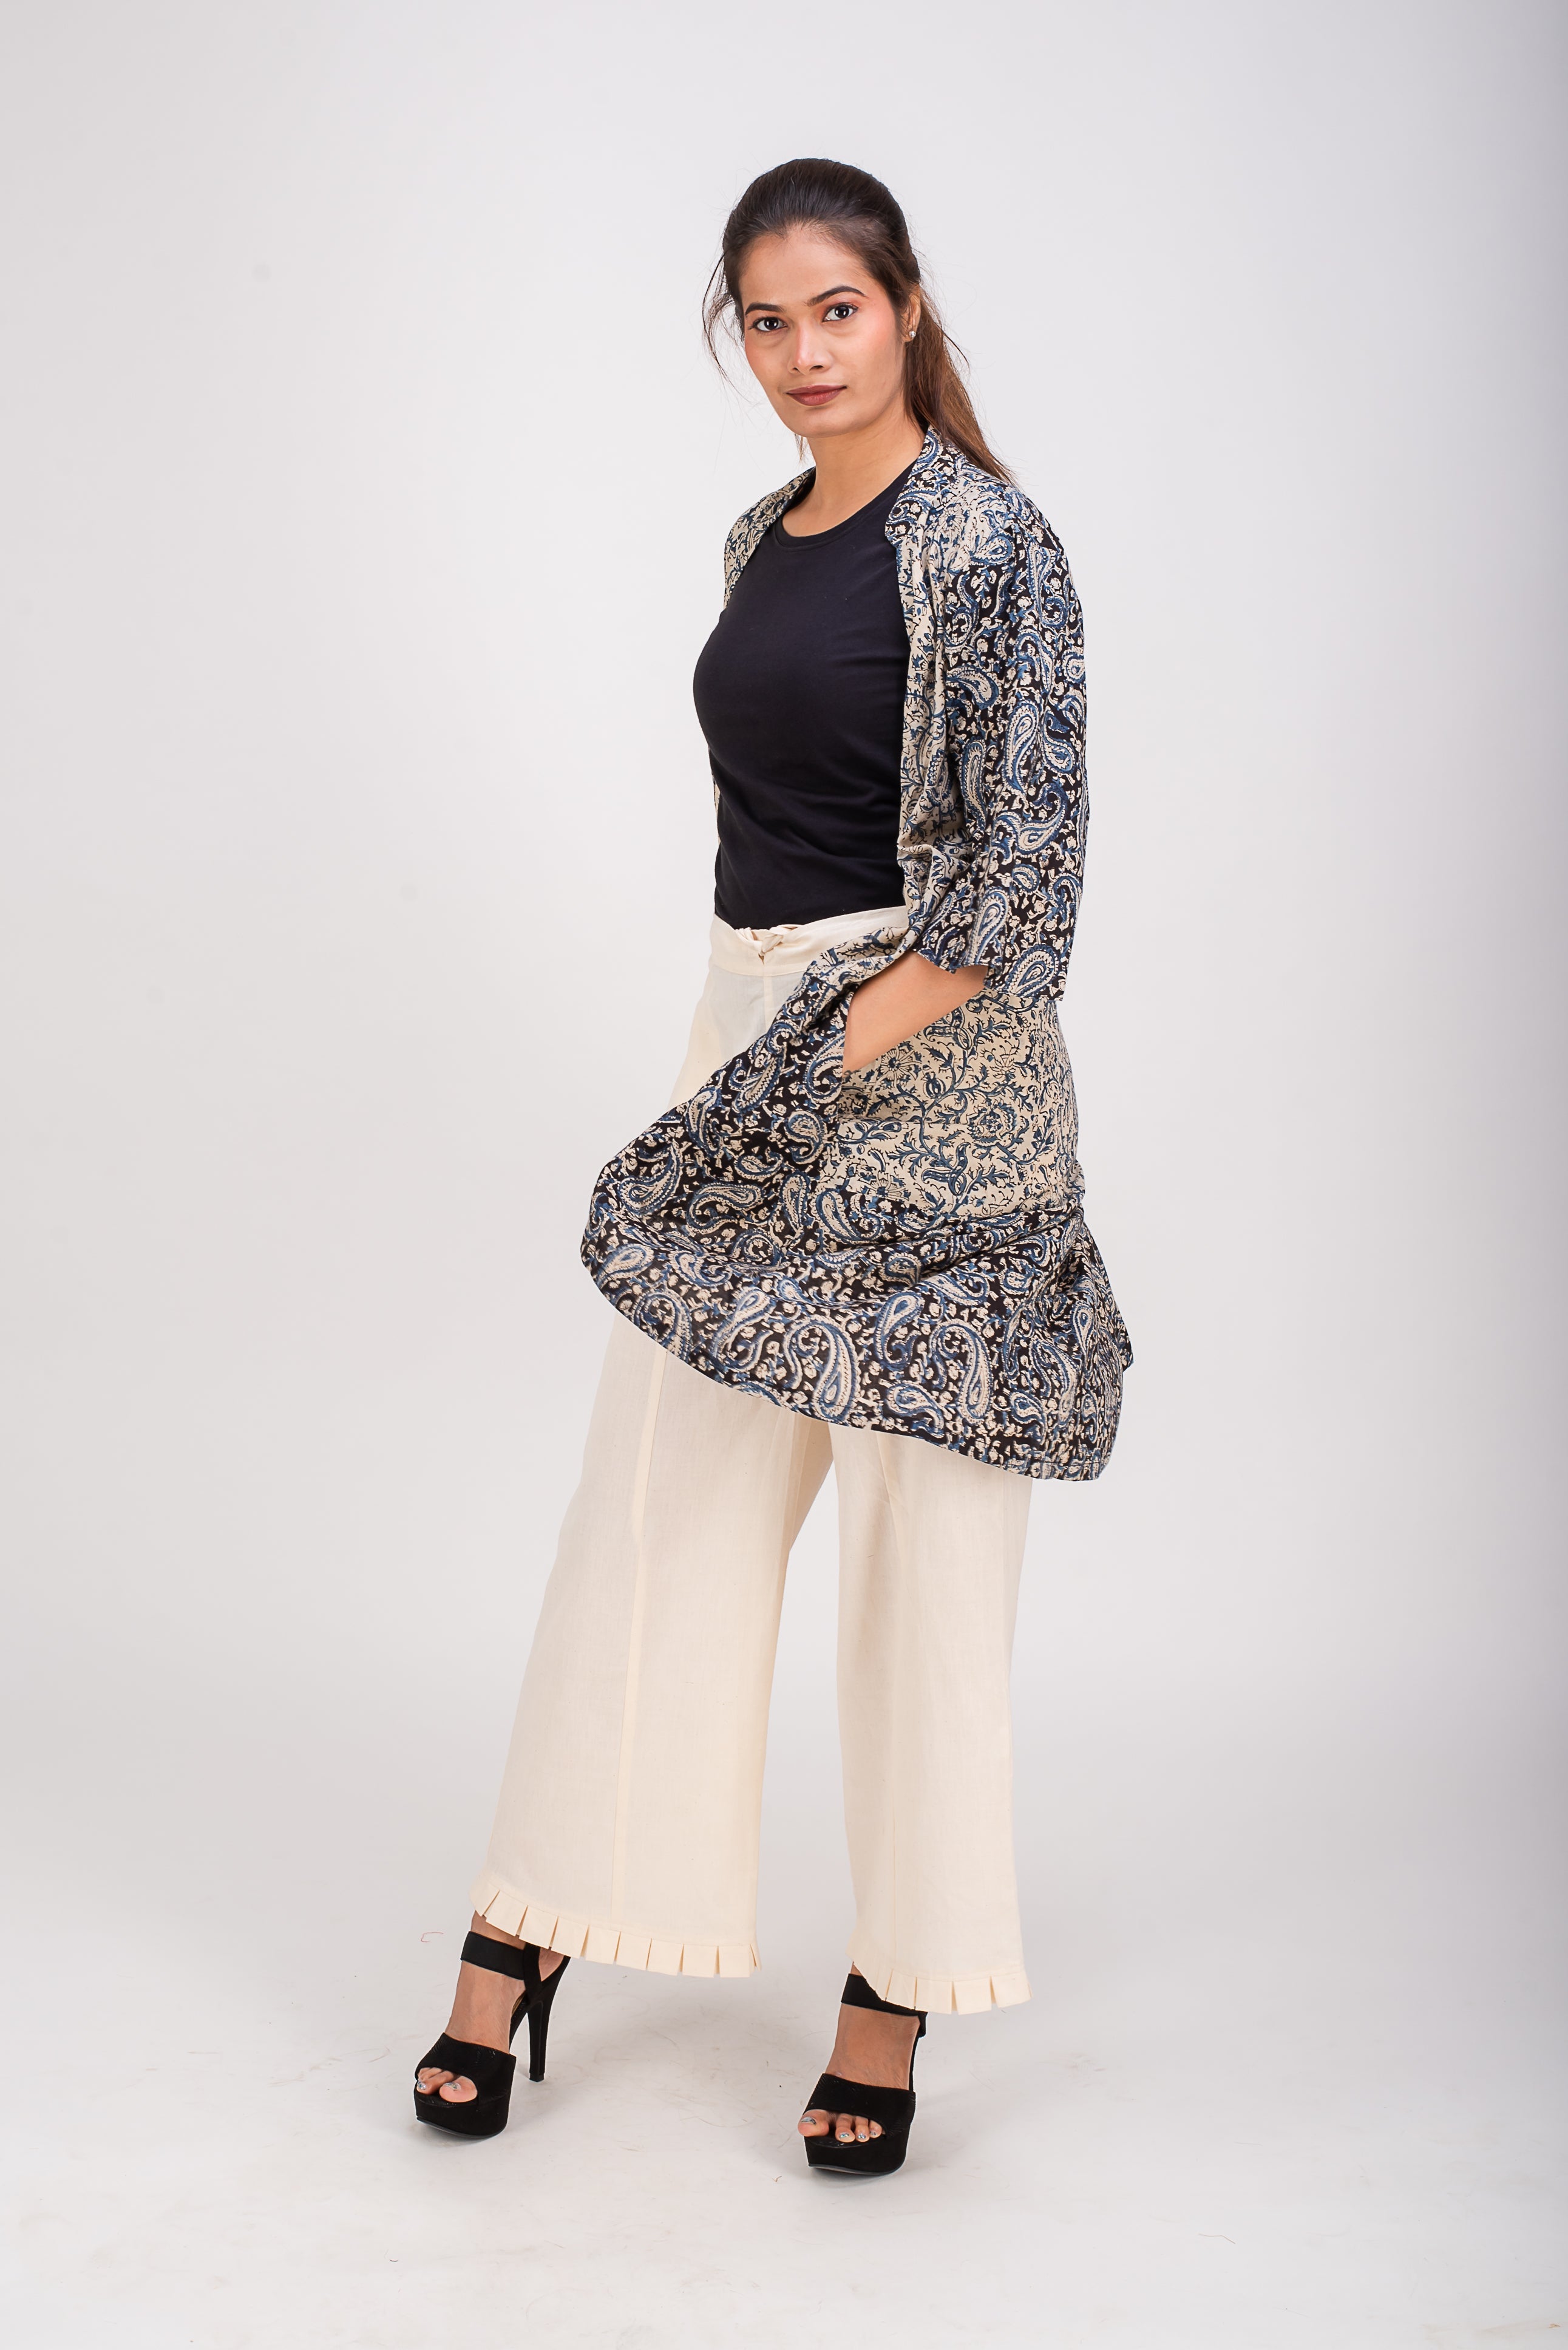 513- 153 Whitelotus "Kimono" Women's coat